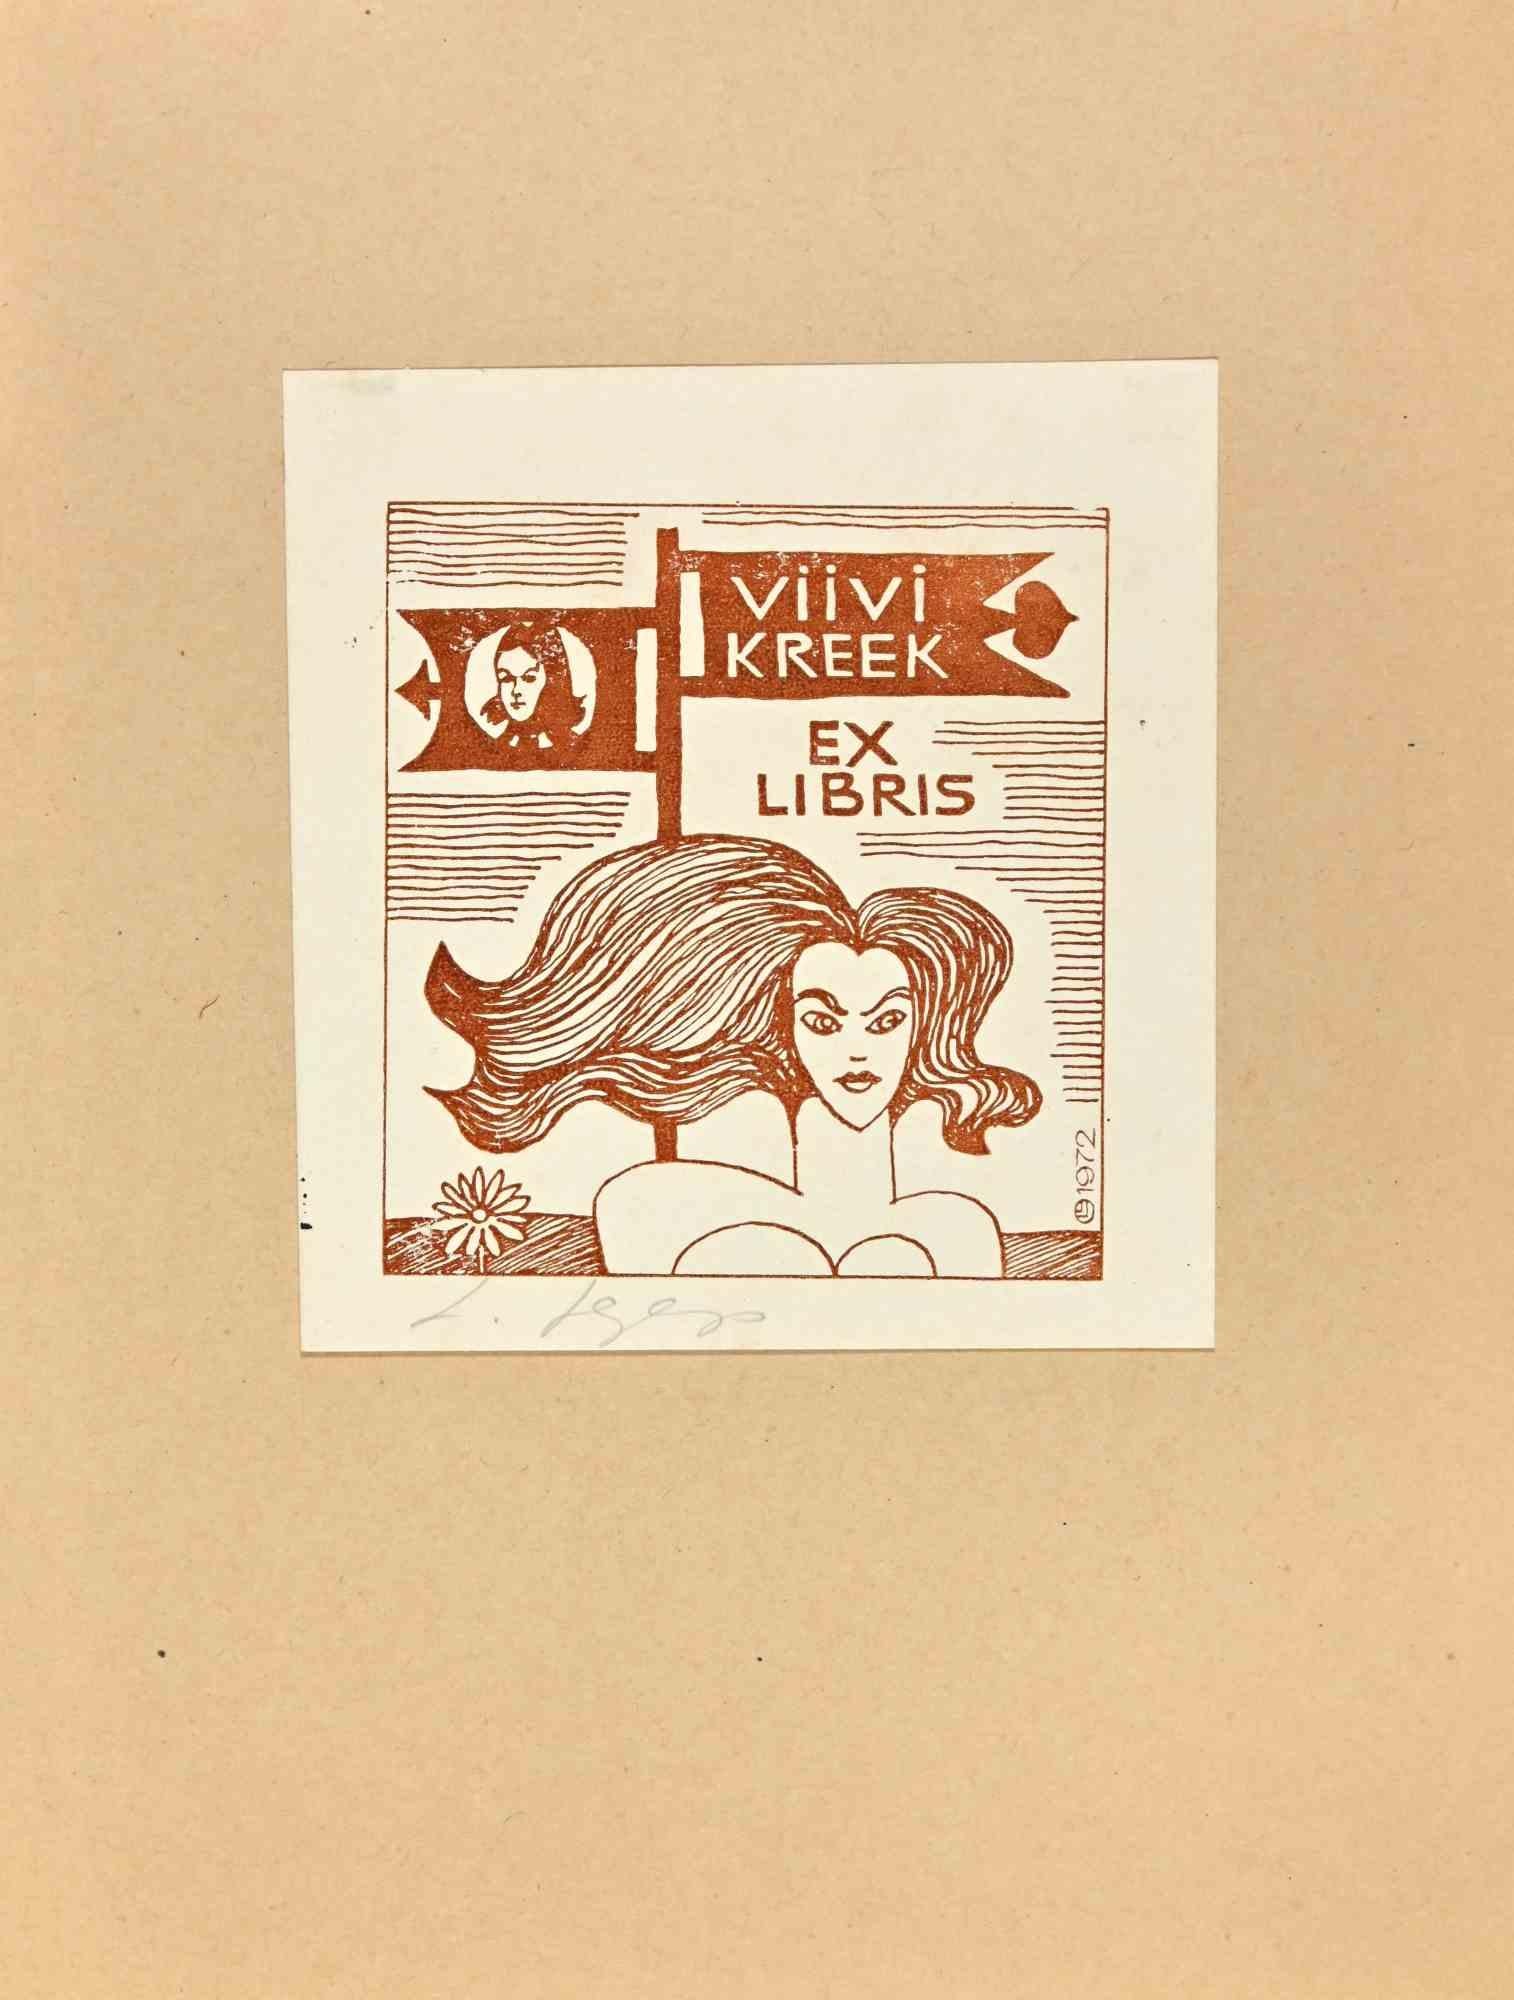  Ex Libris - Viivi Kpeek - Mid 20th Century - Art by Unknown